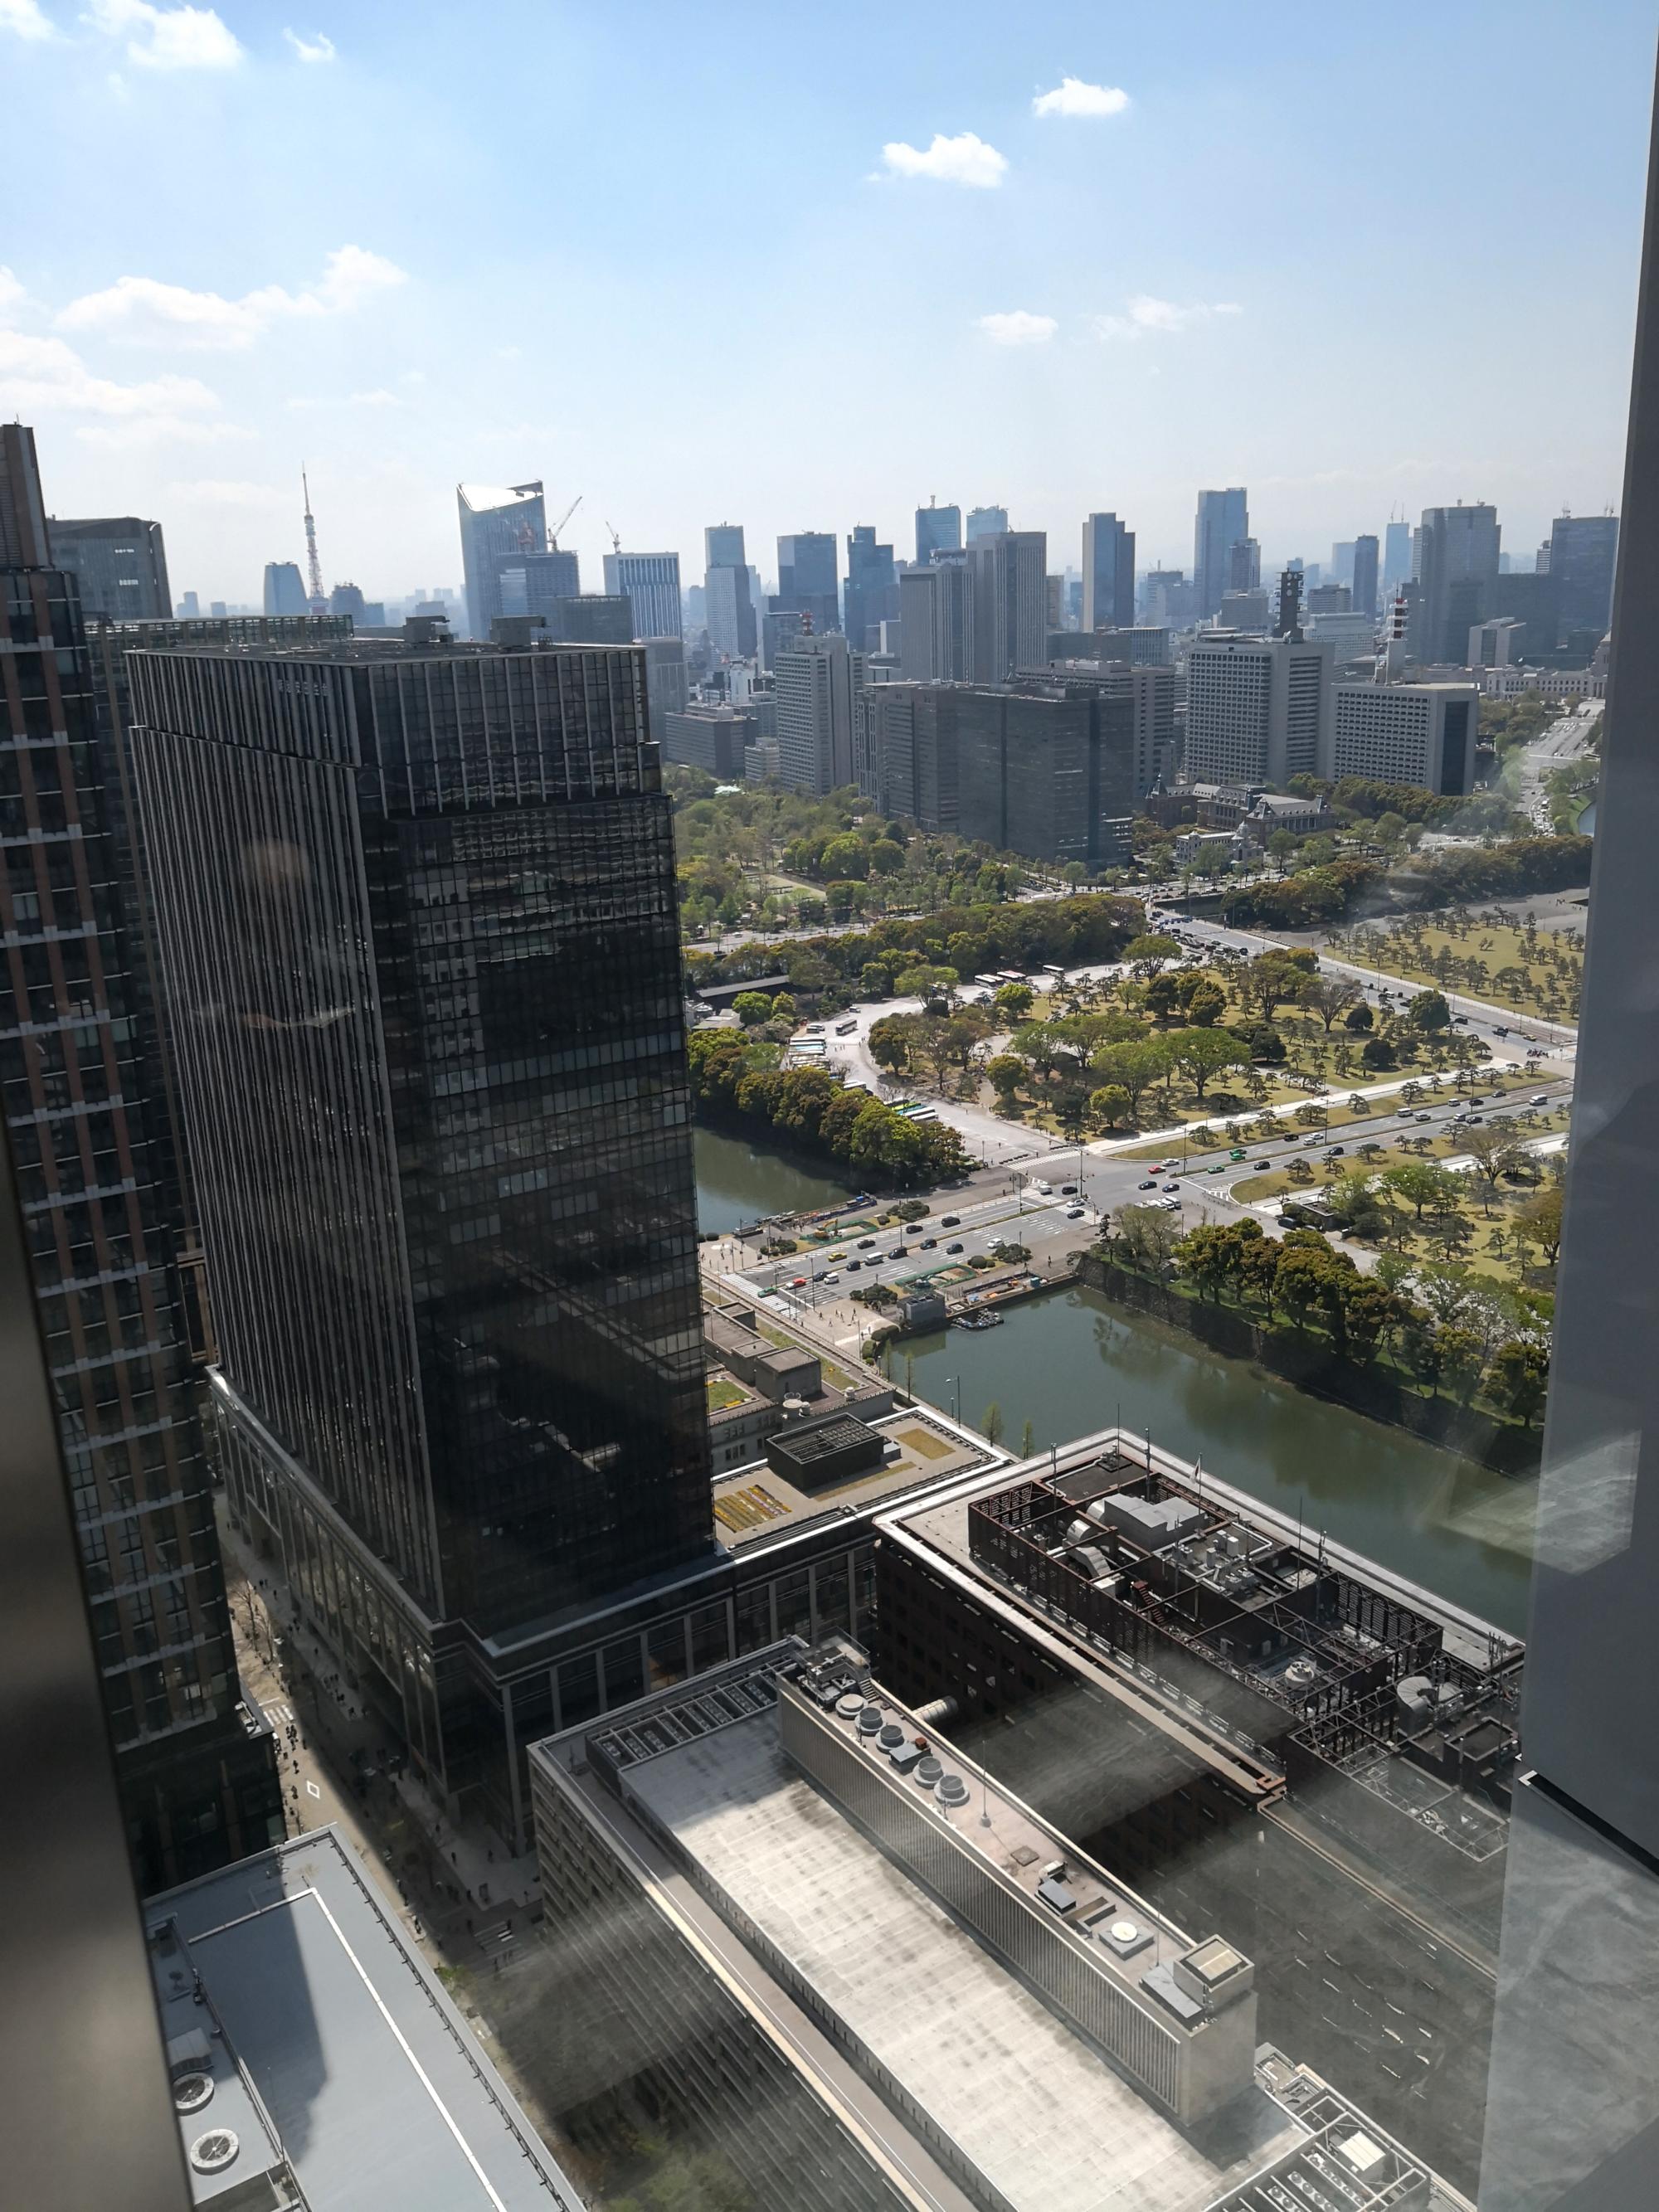 Tokyo (2019) - Marunouchi Bldg View #2